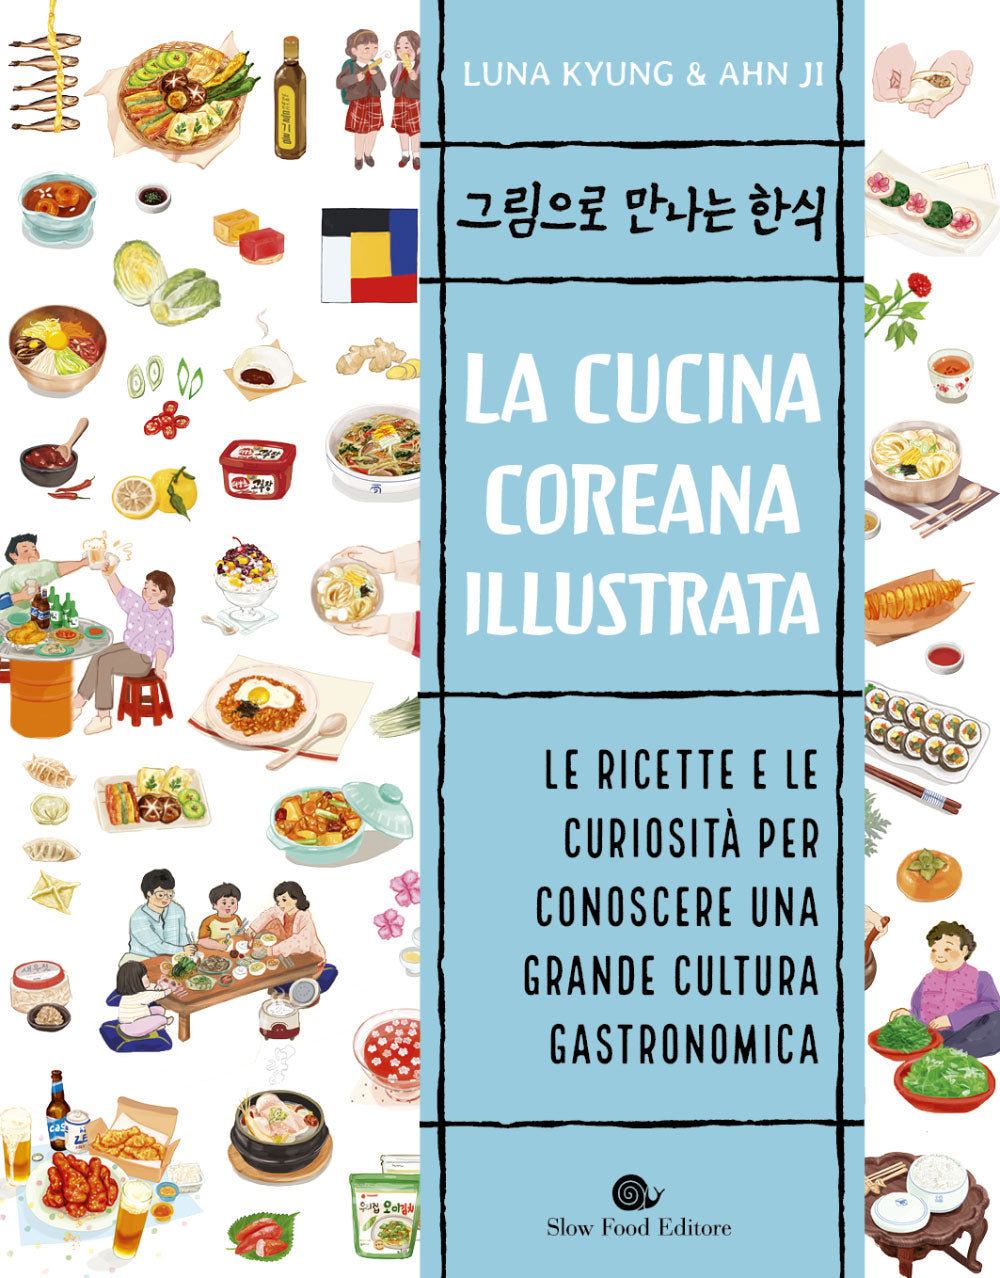 La cucina coreana illustrata::Le ricette e le curiosità per conoscere una grande cultura gastronomica